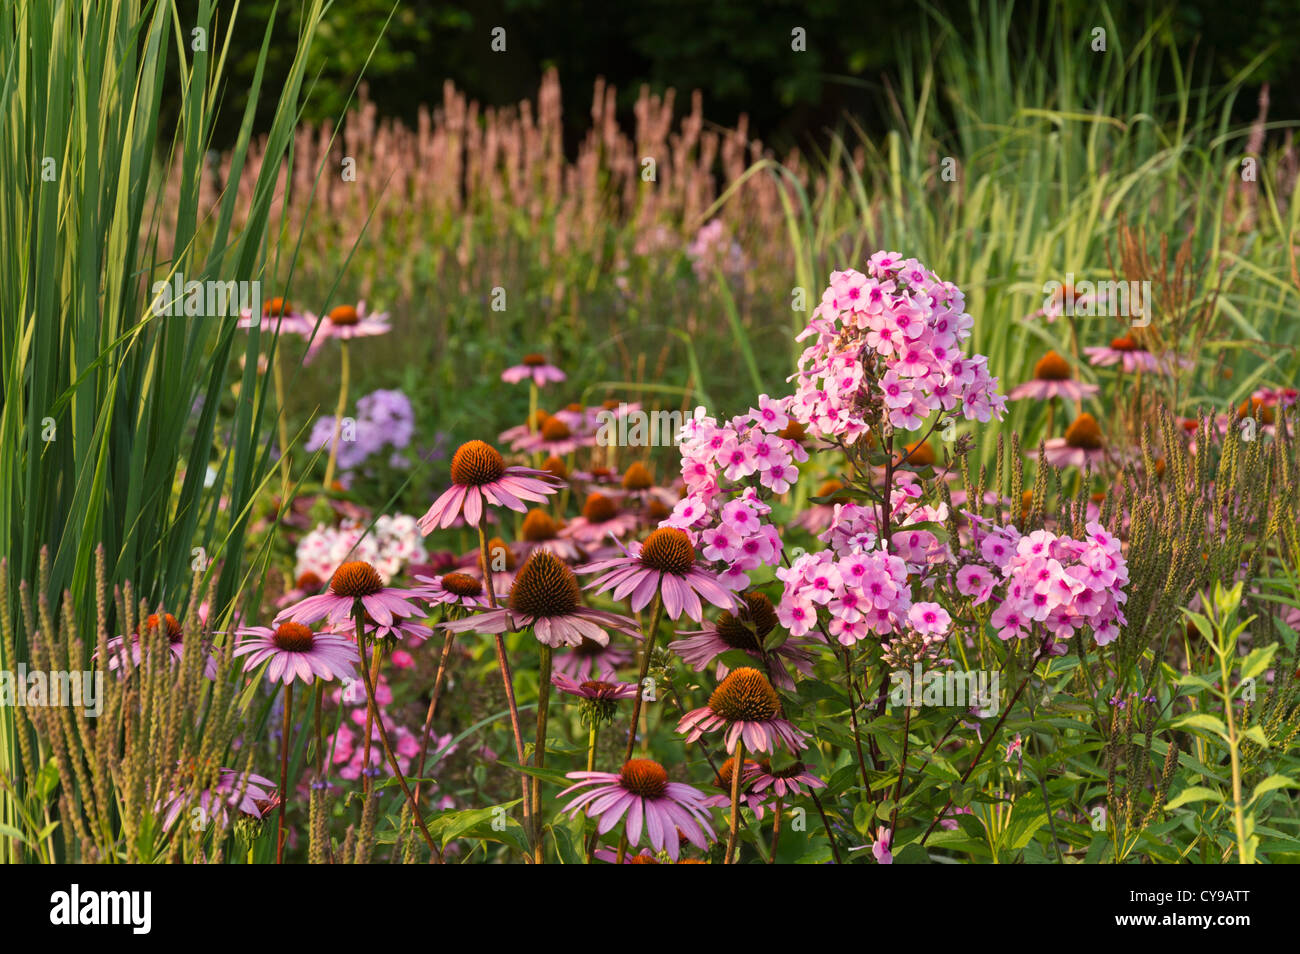 Purple cone flower (Echinacea purpurea 'Rubinstern') and garden phlox (Phlox paniculata) Stock Photo